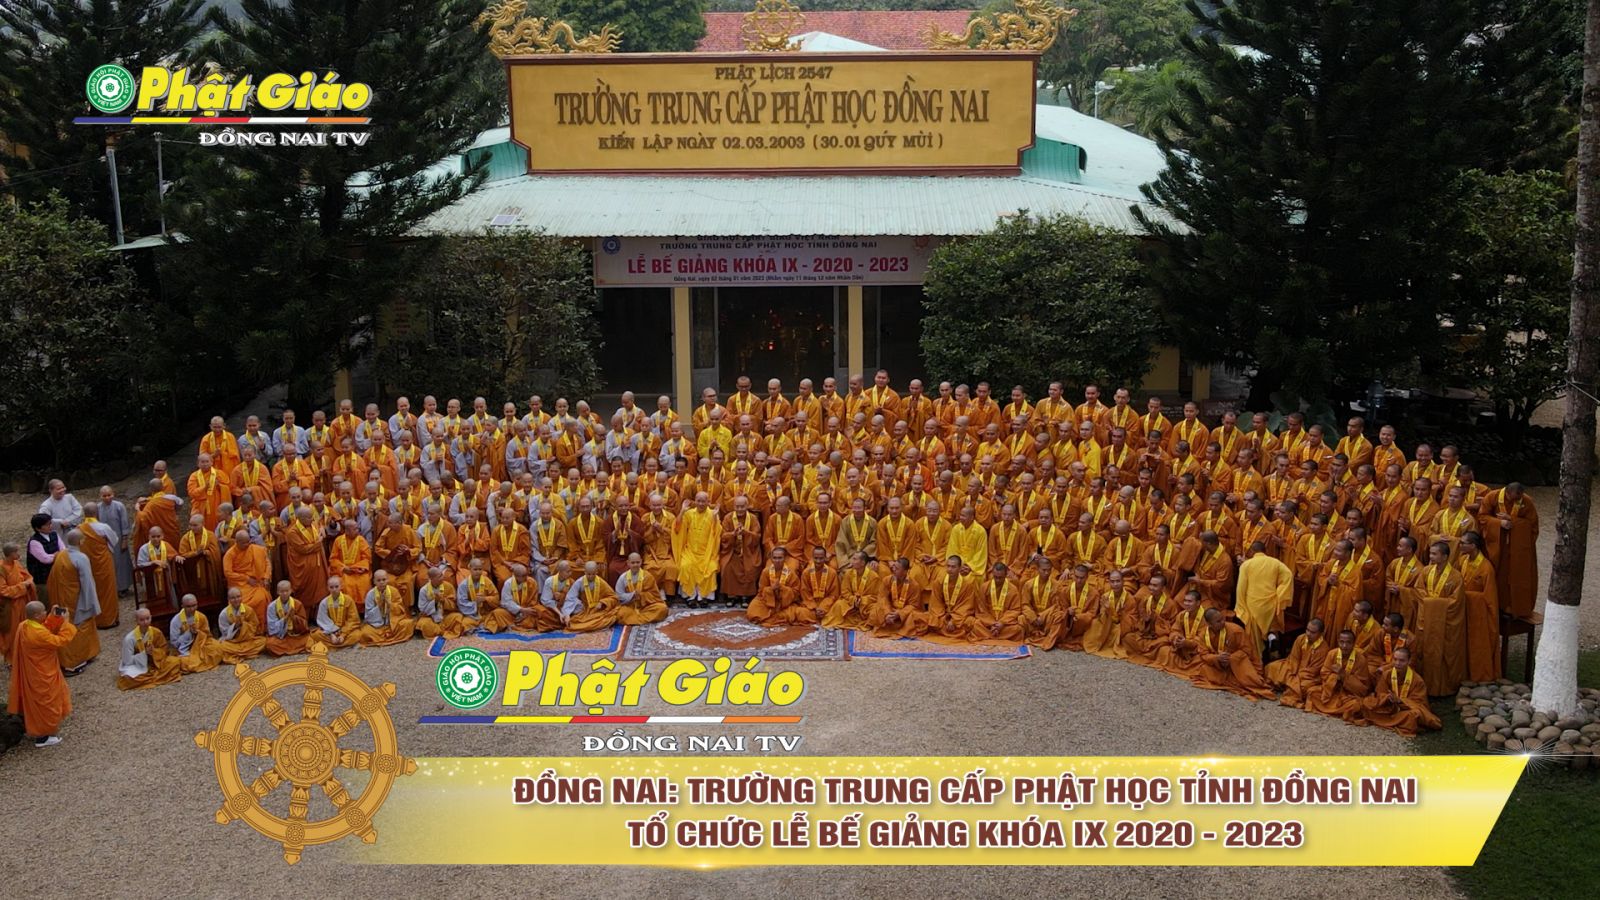 [Video] Đồng Nai: Trường Trung Cấp Phật Học tỉnh Đồng Nai - tổ chức lễ Bế giảng khóa IX 2020 - 2023